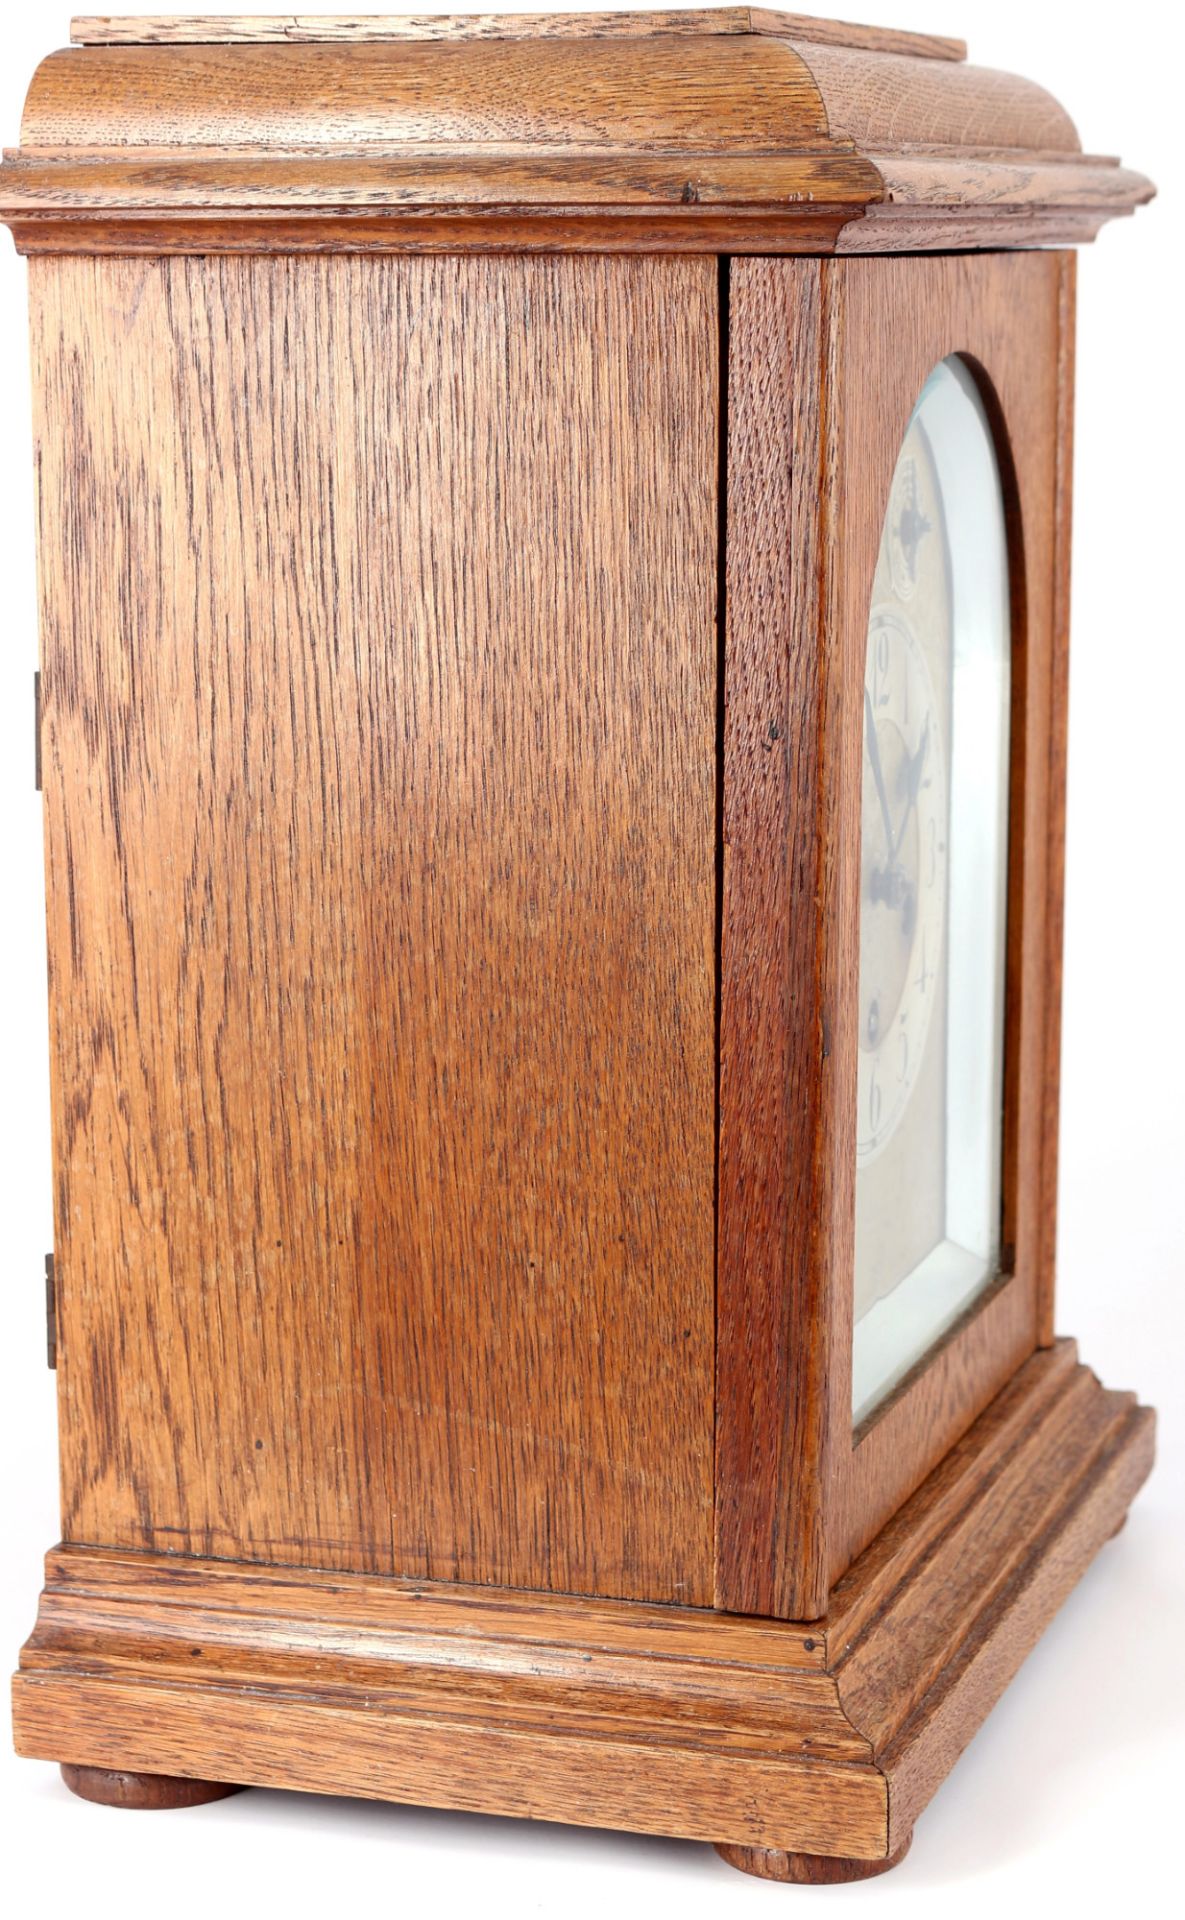 Westminster Tischuhr um 1900, Junghans Stockuhr, bracket clock, - Bild 5 aus 7